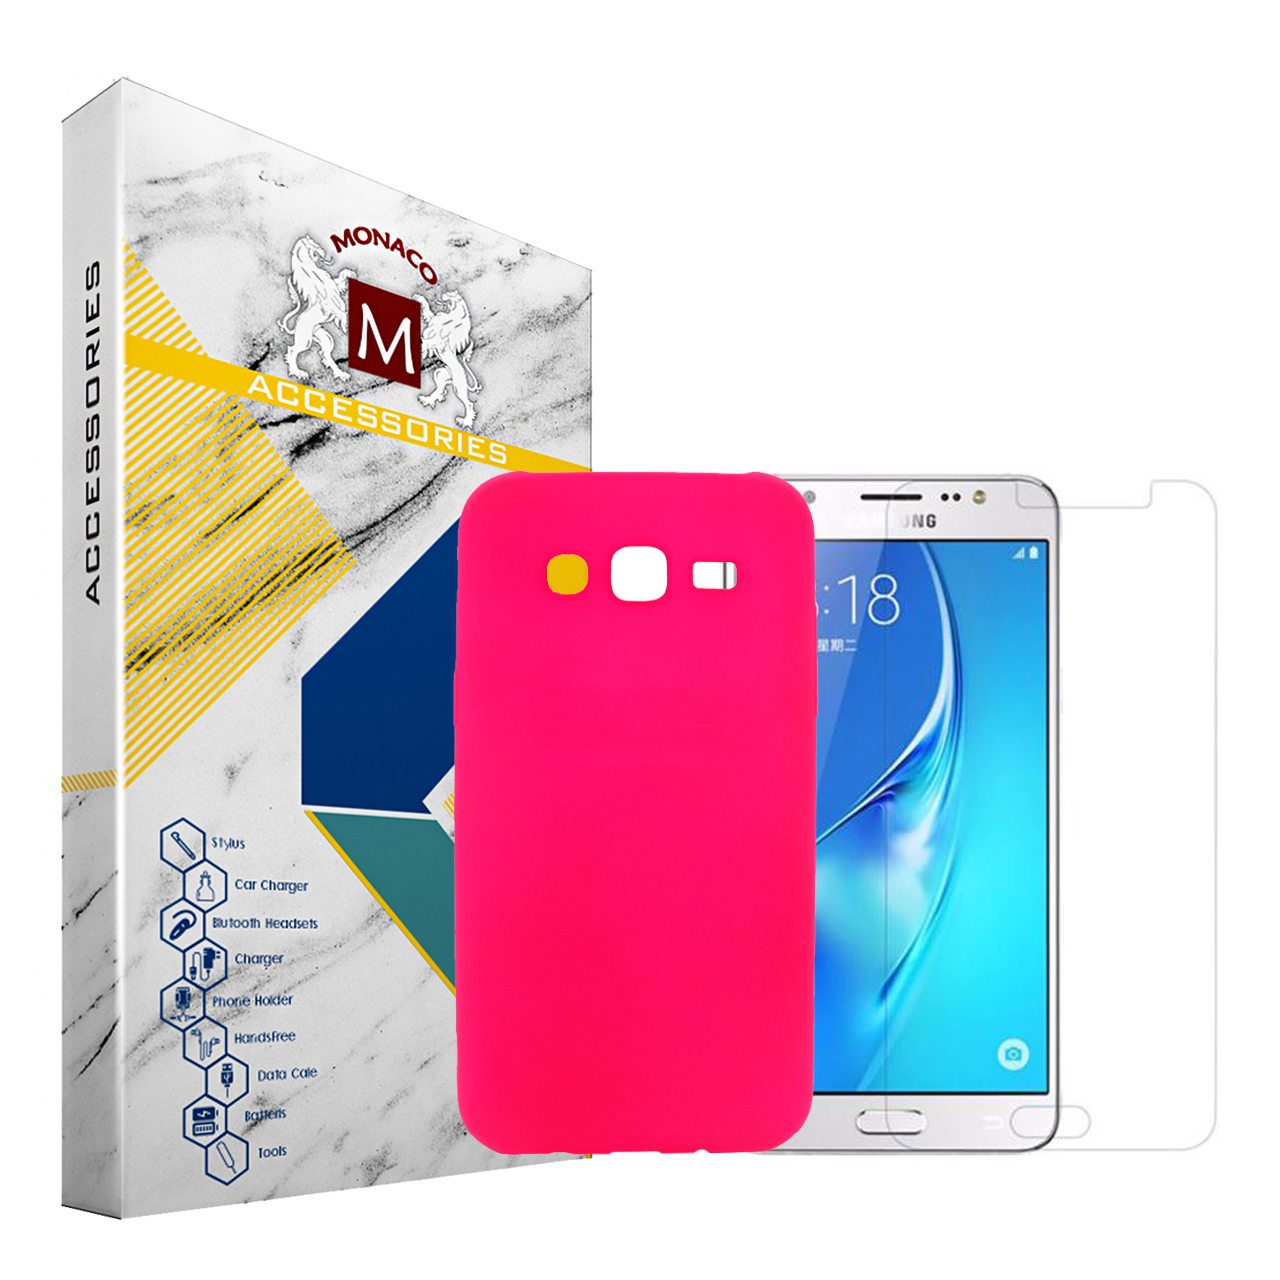 کاور موناکو مدل Sn073 مناسب برای گوشی موبایل سامسونگ Galaxy J5 2015 به همراه محافظ صفحه نمایش